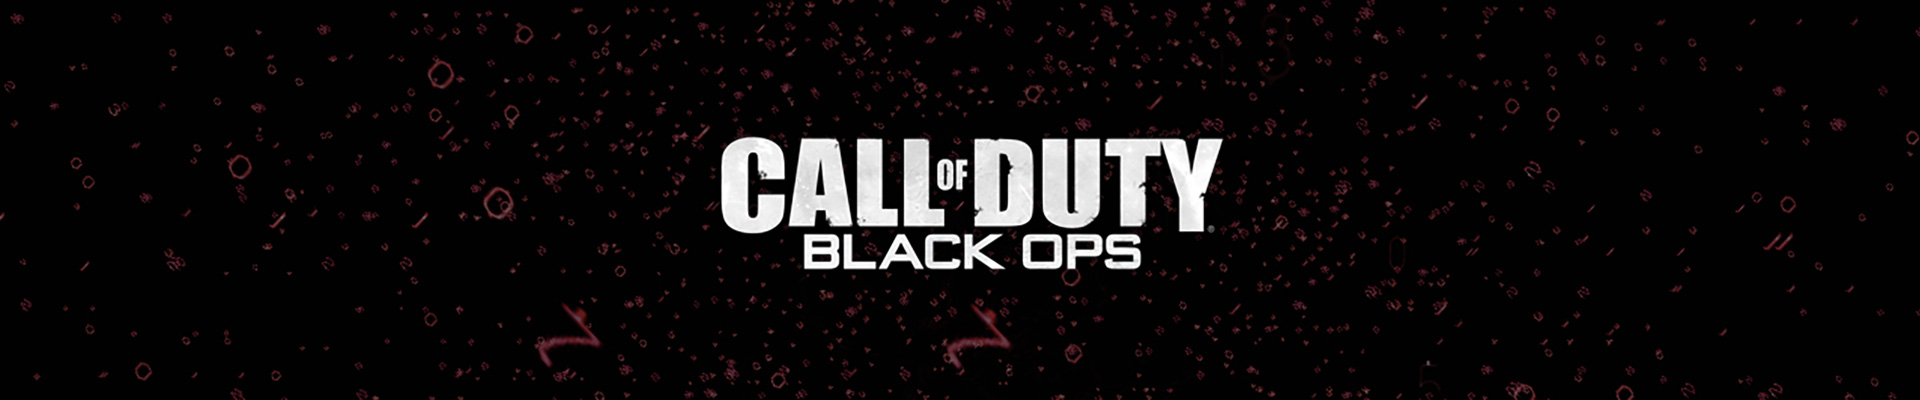 Call of Duty: Black Ops. Вертолеты и ломаный русский